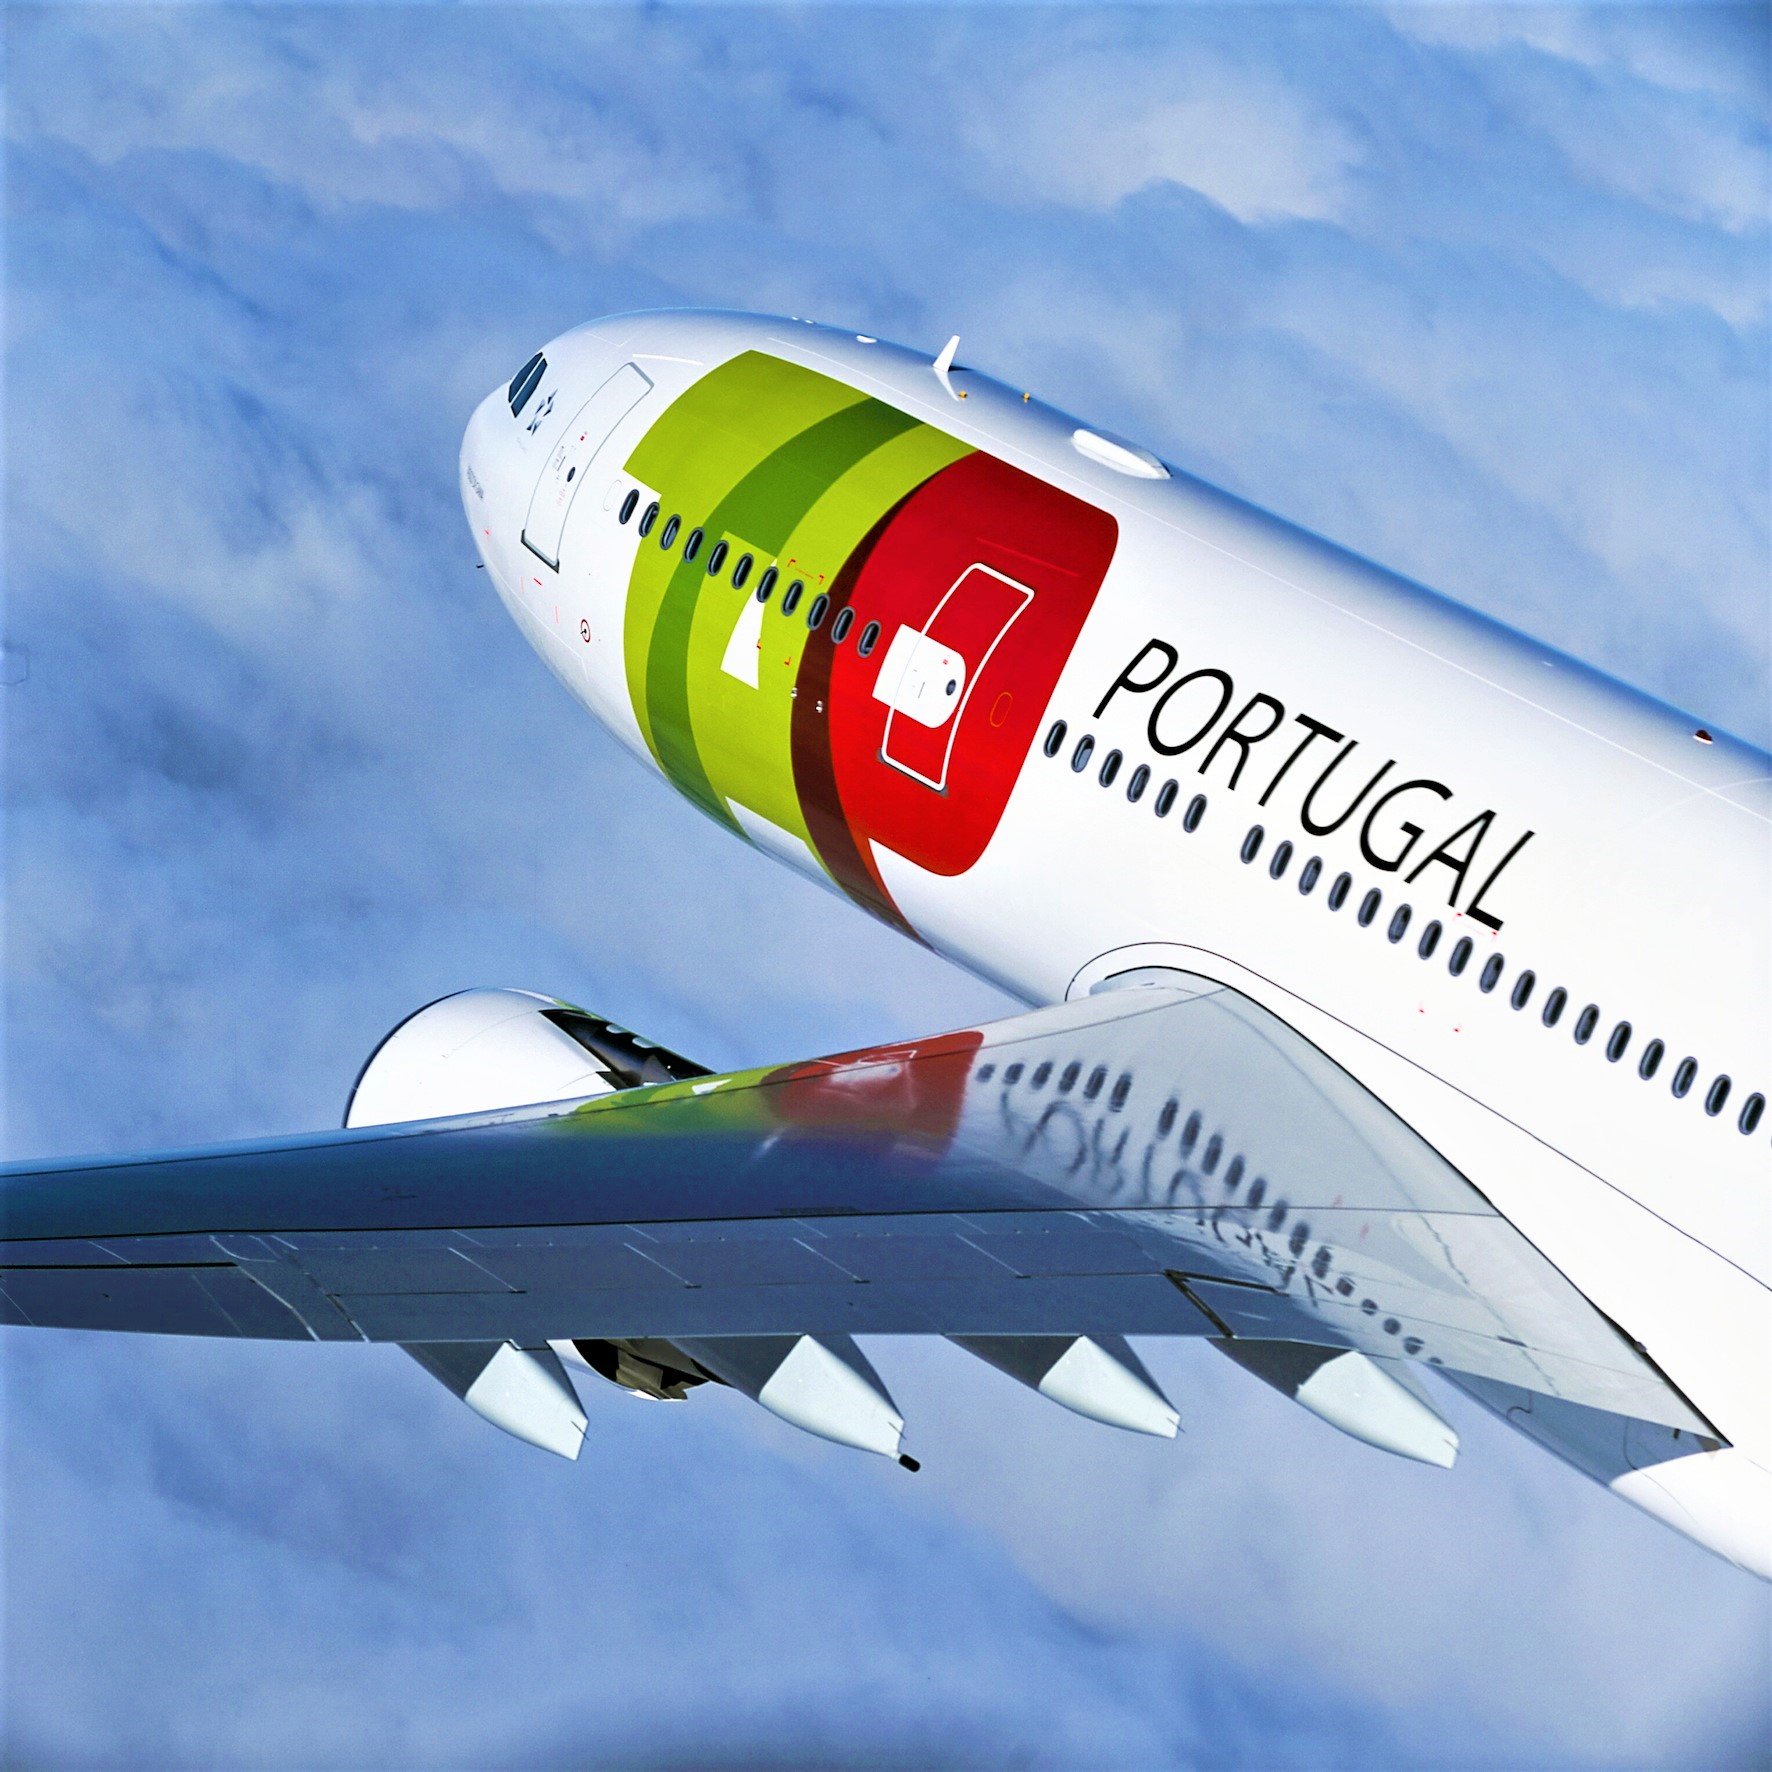 Accordo TAP Air Portugal con AccessRail per viaggi in Europa aereo + ferrovia